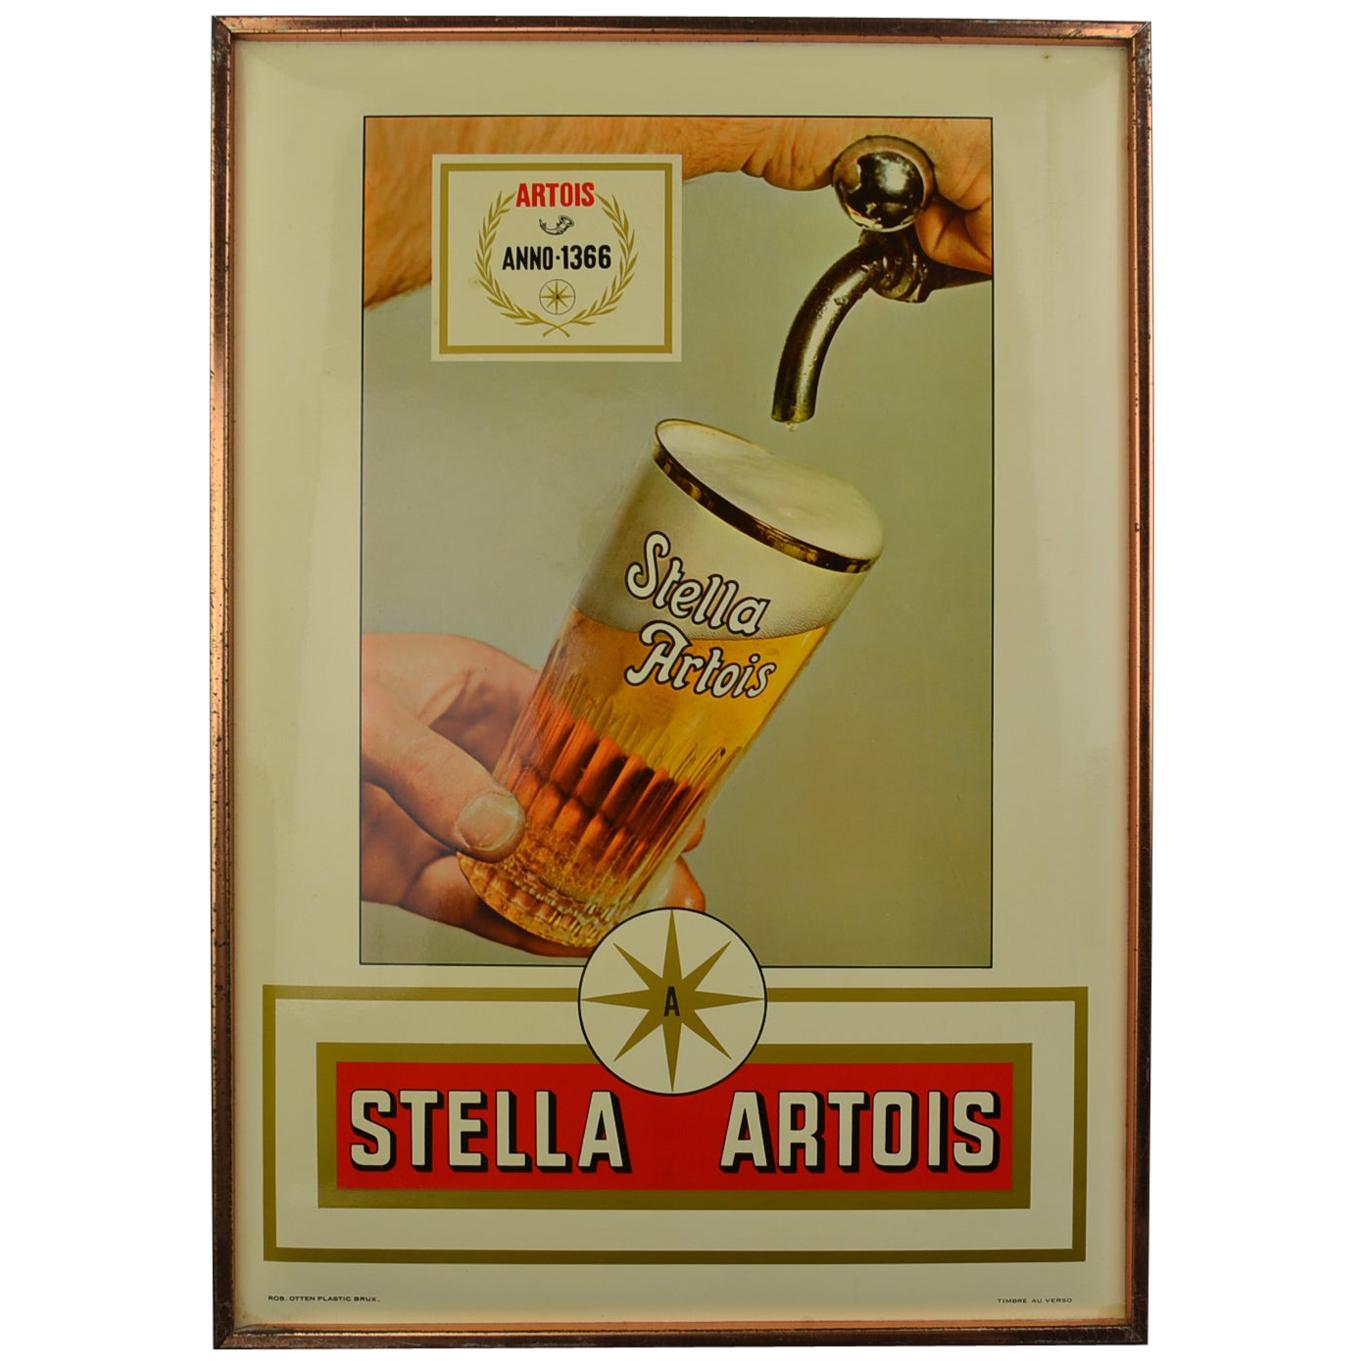 1971 Belgian Beer Sign for Stella Artois